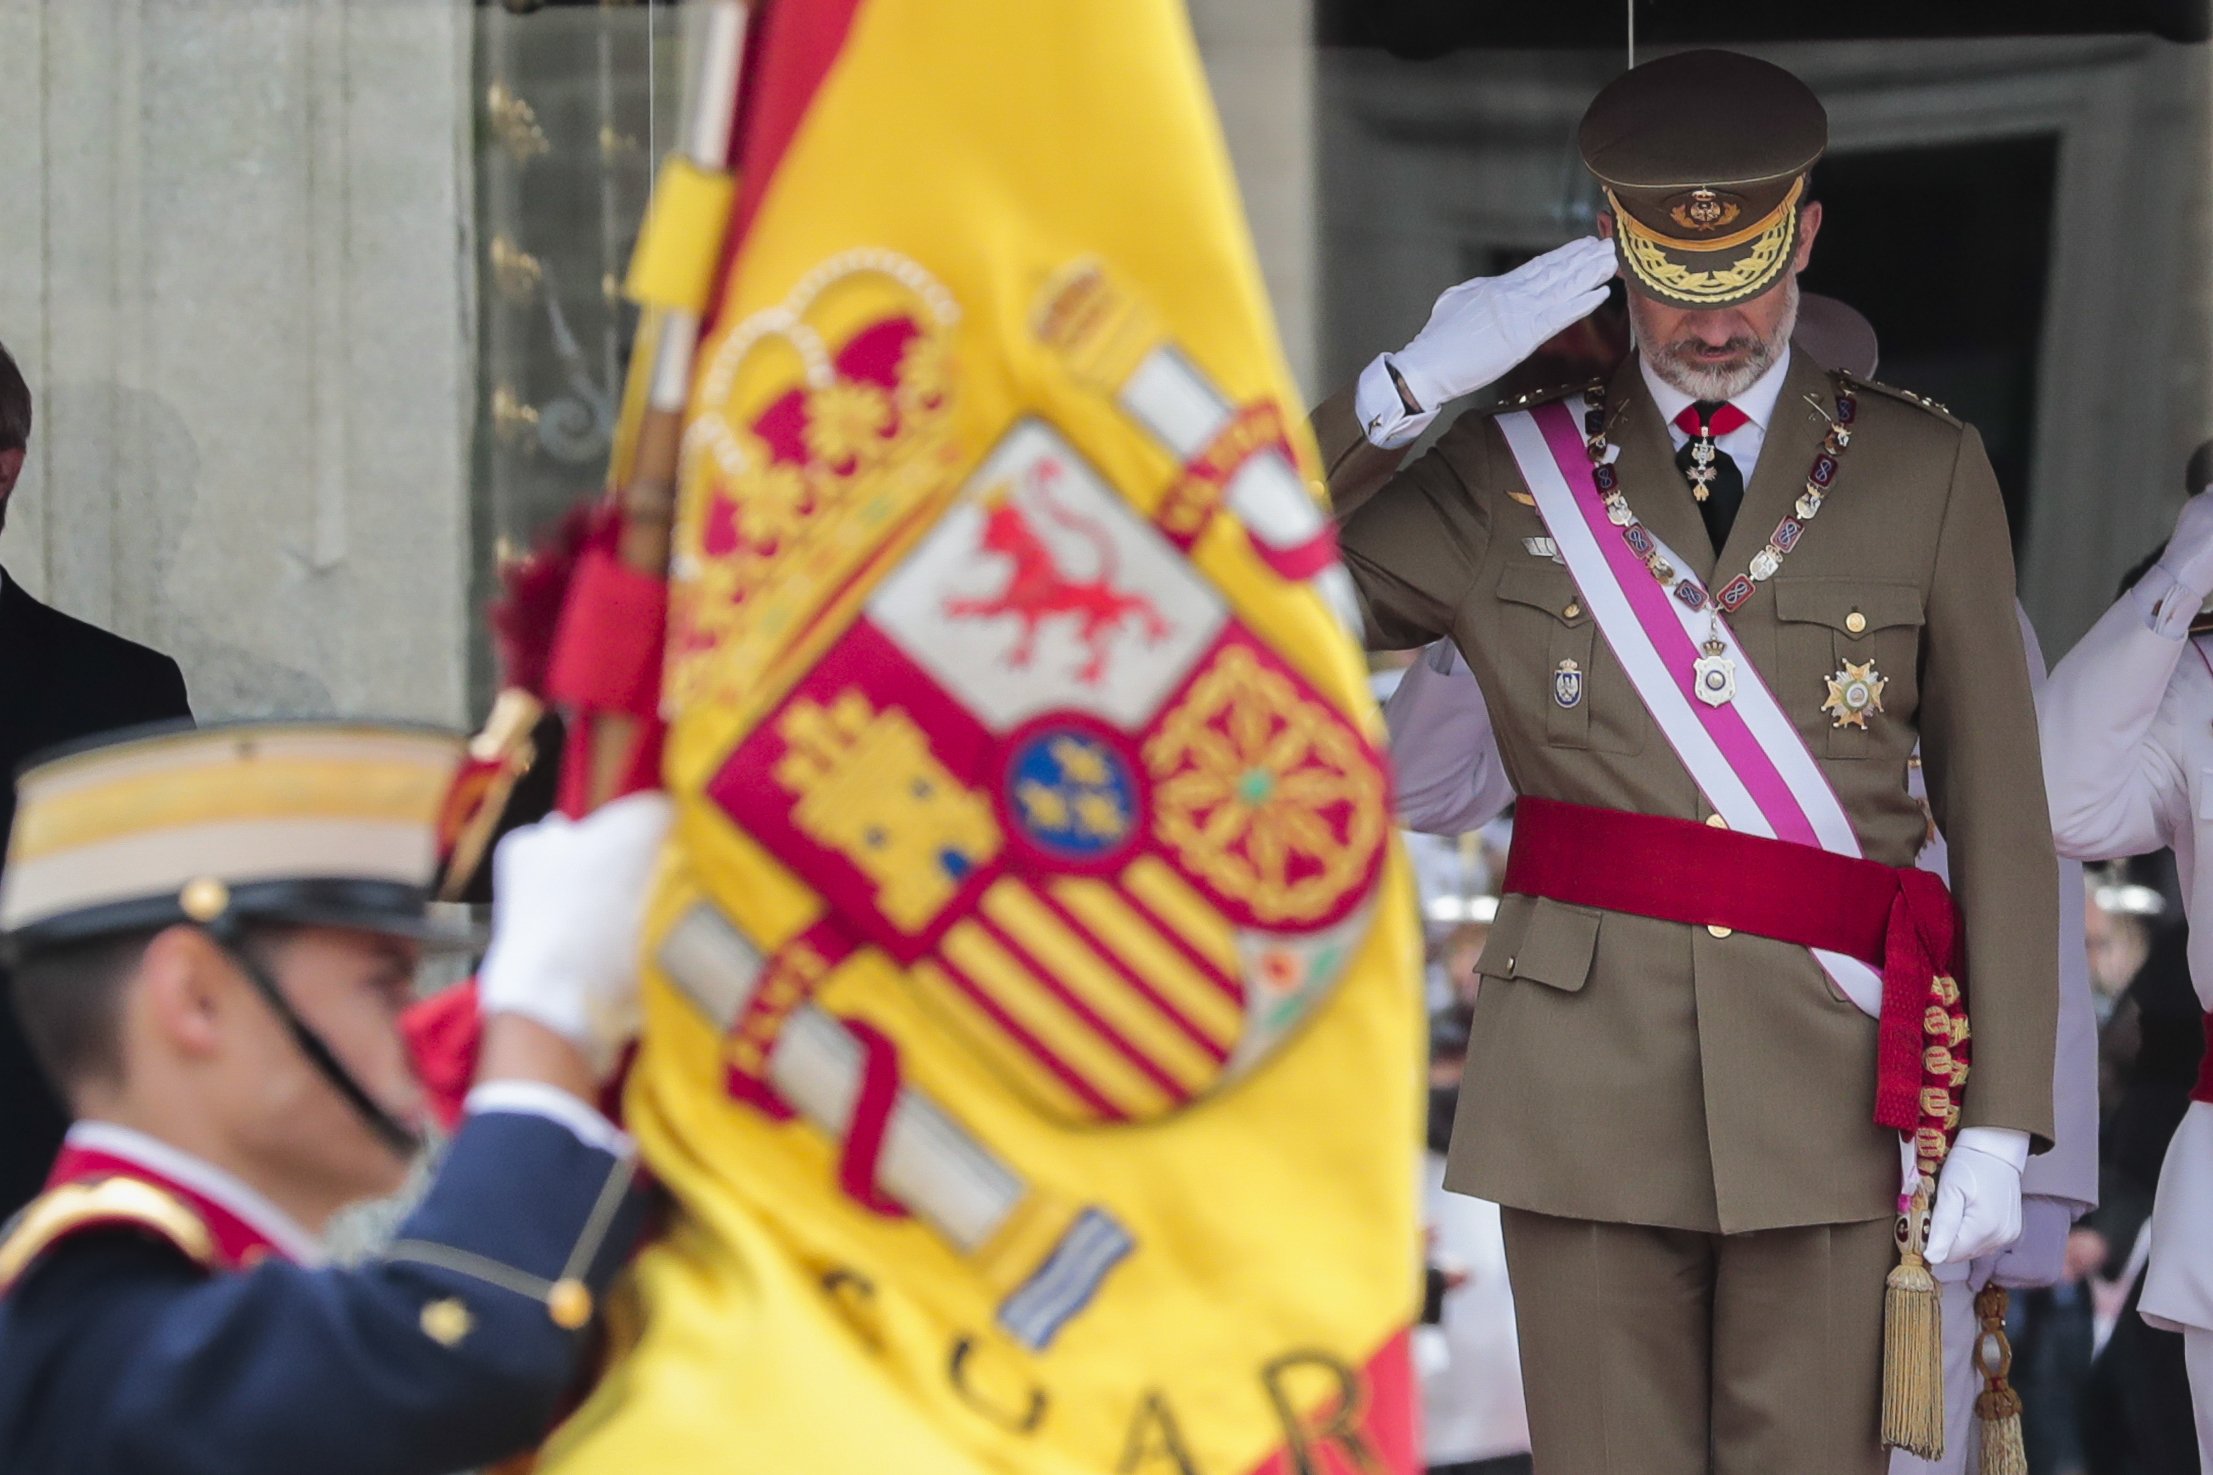 Als catalans, ni ens agraden ni ens emocionen la bandera i l’himne espanyols